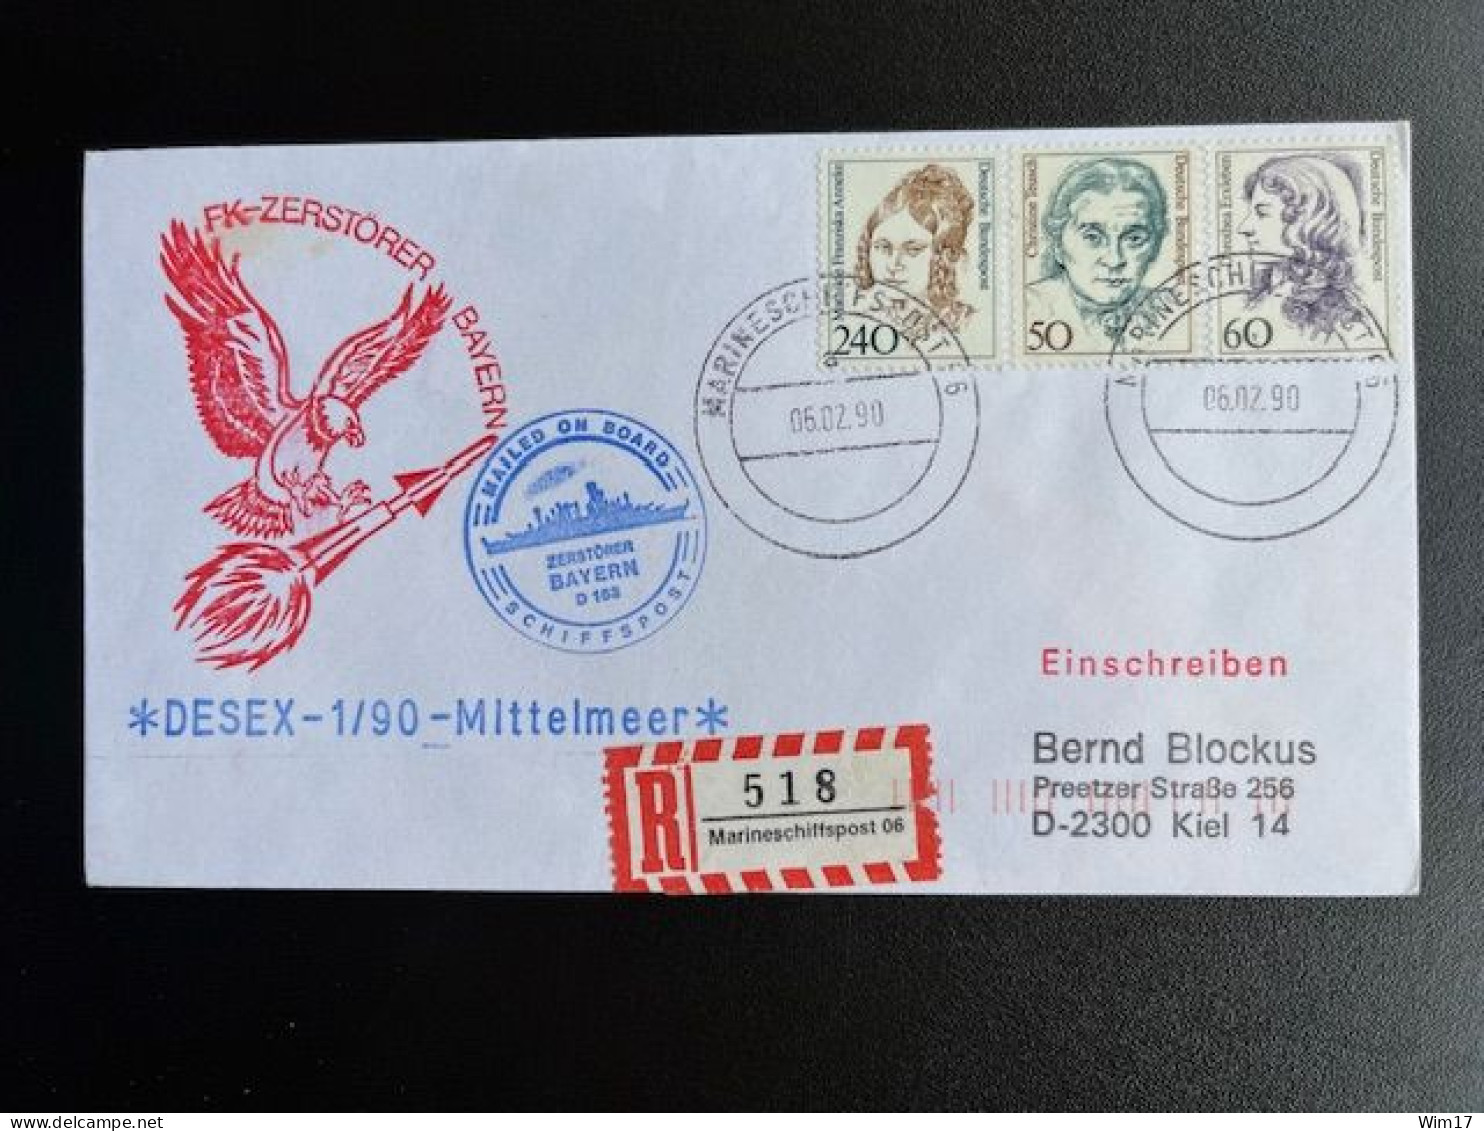 GERMANY 1990 REGISTERED LETTER MARINESCHIFFSPOST 06 TO KIEL 06-02-1990 DUITSLAND DEUTSCHLAND EINSCHREIBEN - Covers & Documents